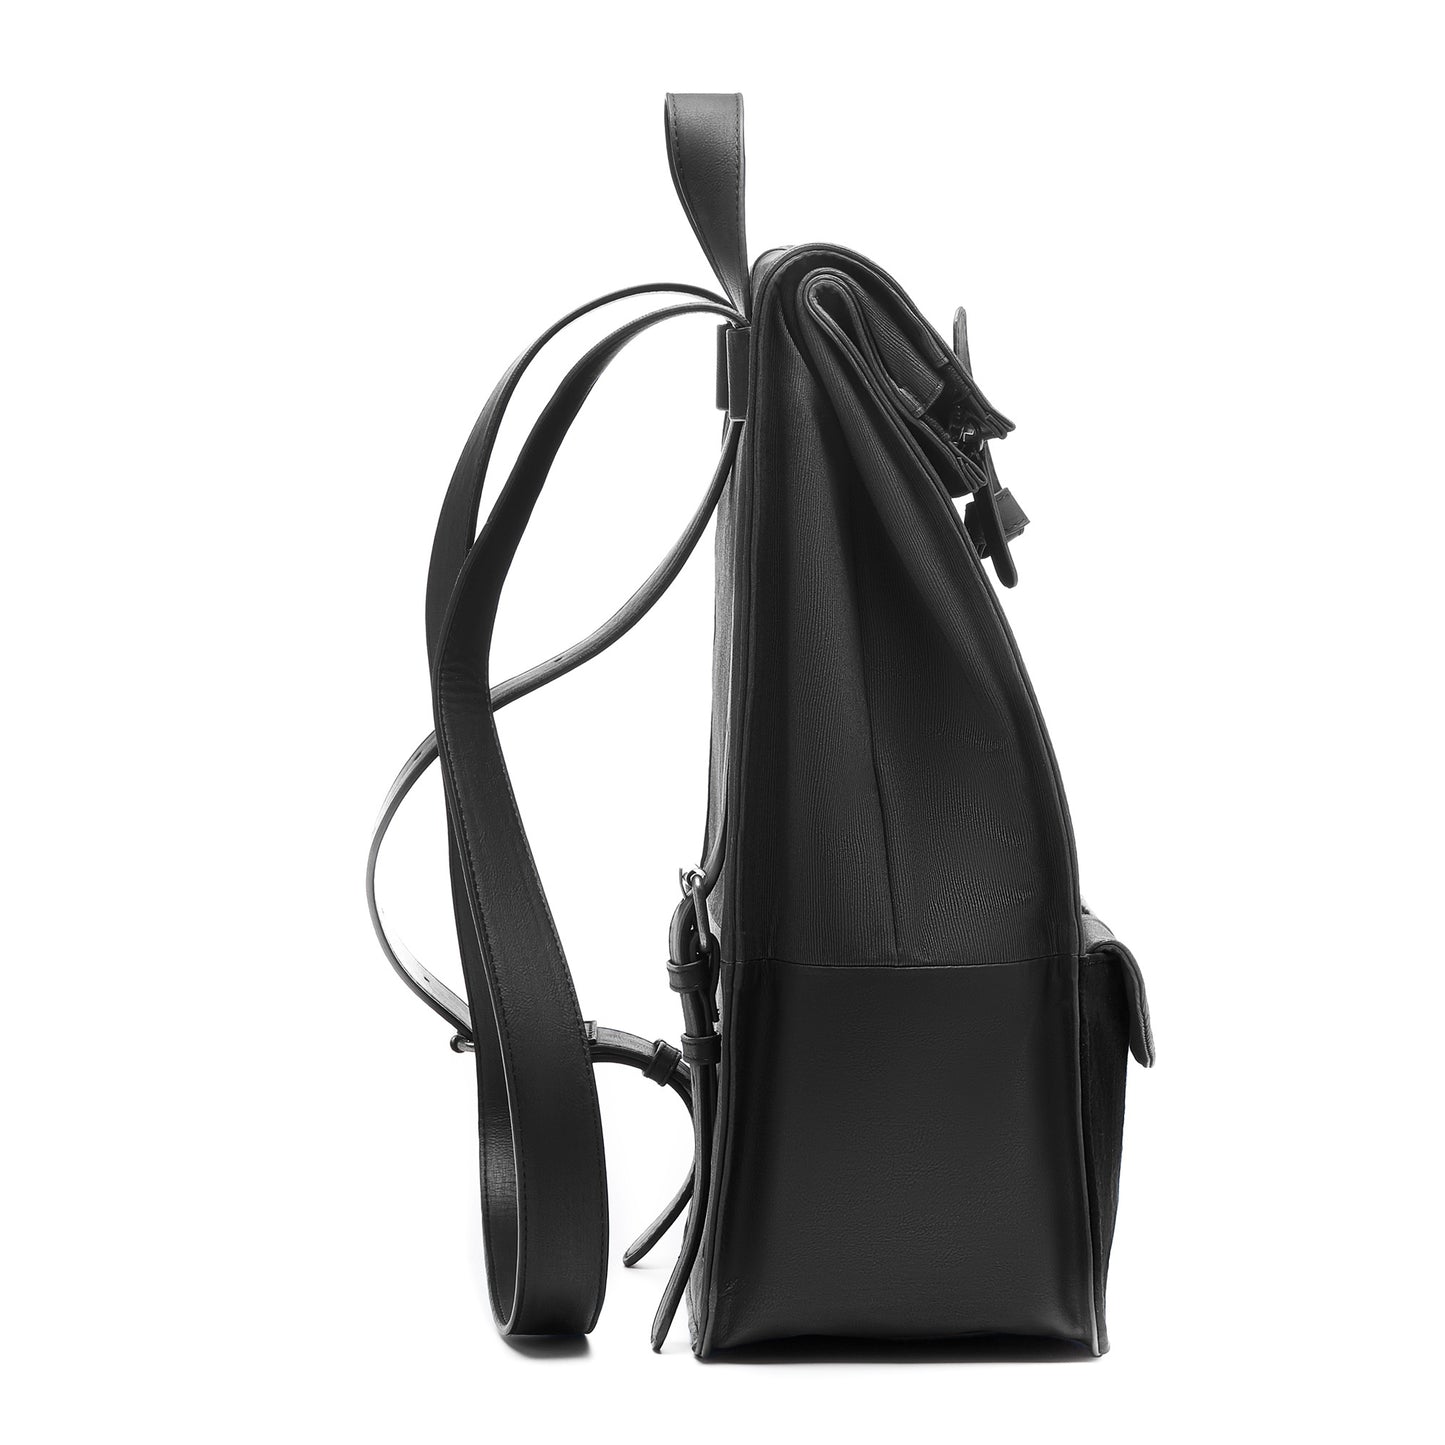 Essential Bag sac à dos noir avec compartiment pour ordinateur portable de 15 pouces